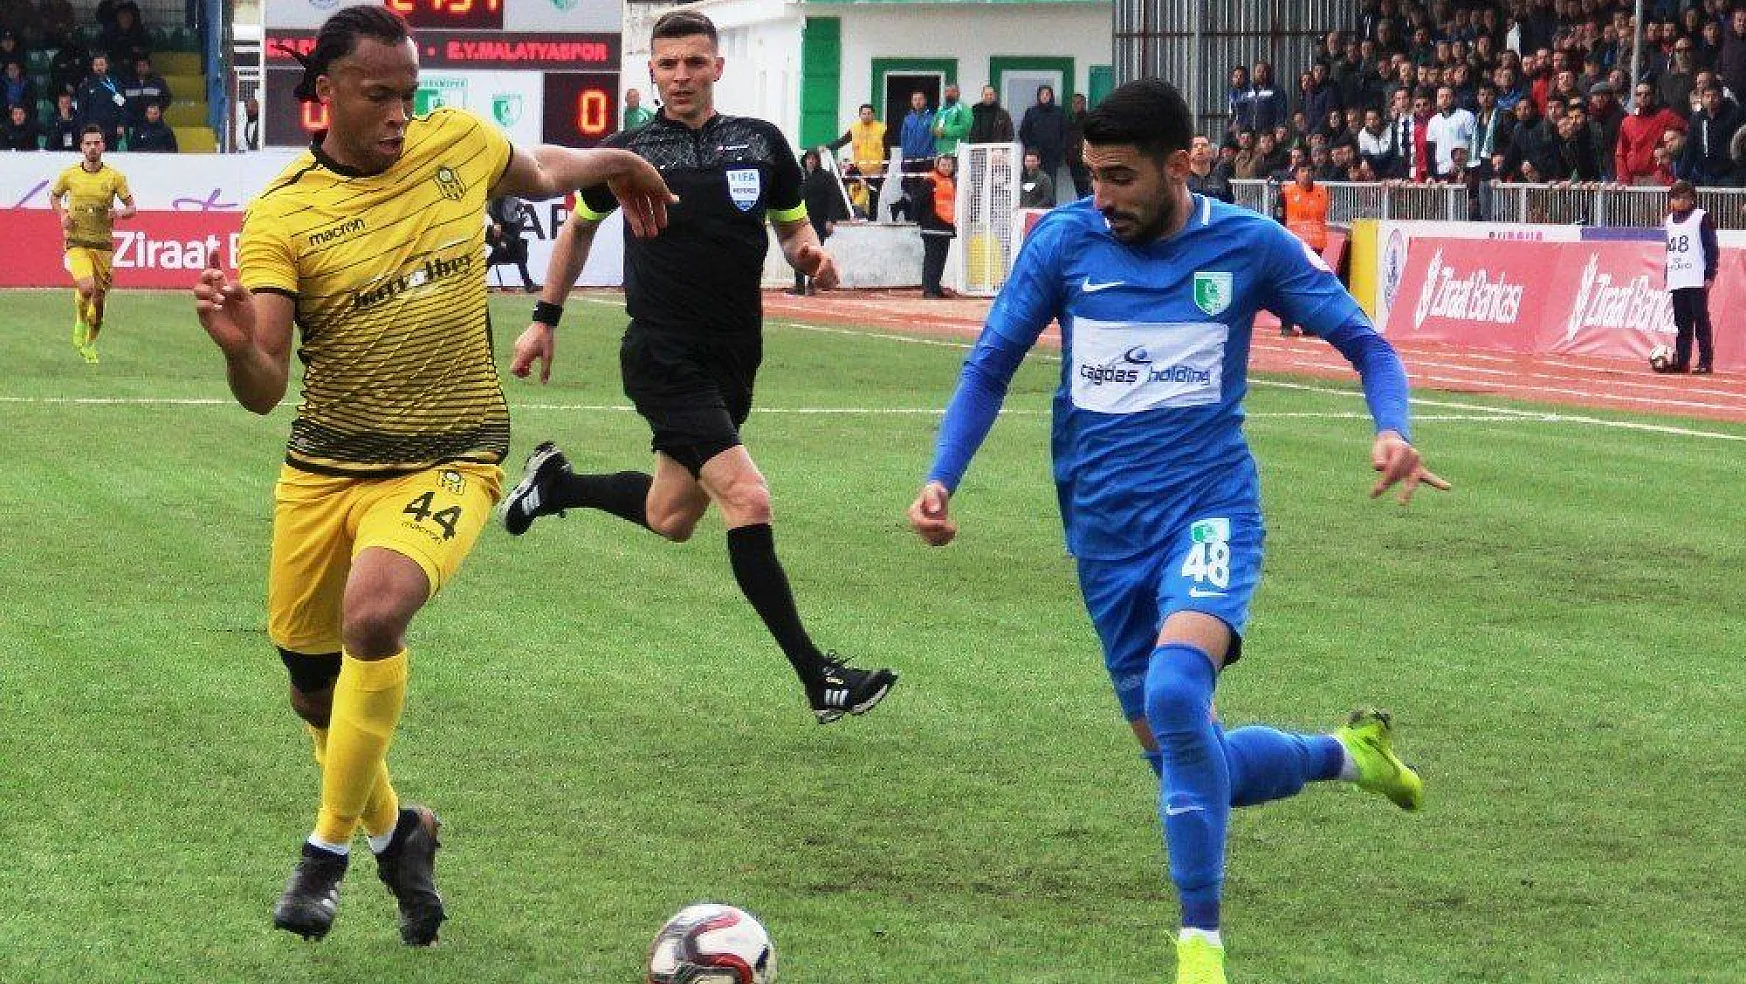 Ziraat Türkiye Kupası: Bodrum Belediyesi Bodrumspor: 1 - Evkur Yeni Malatyaspor: 2 (Maç sonucu)